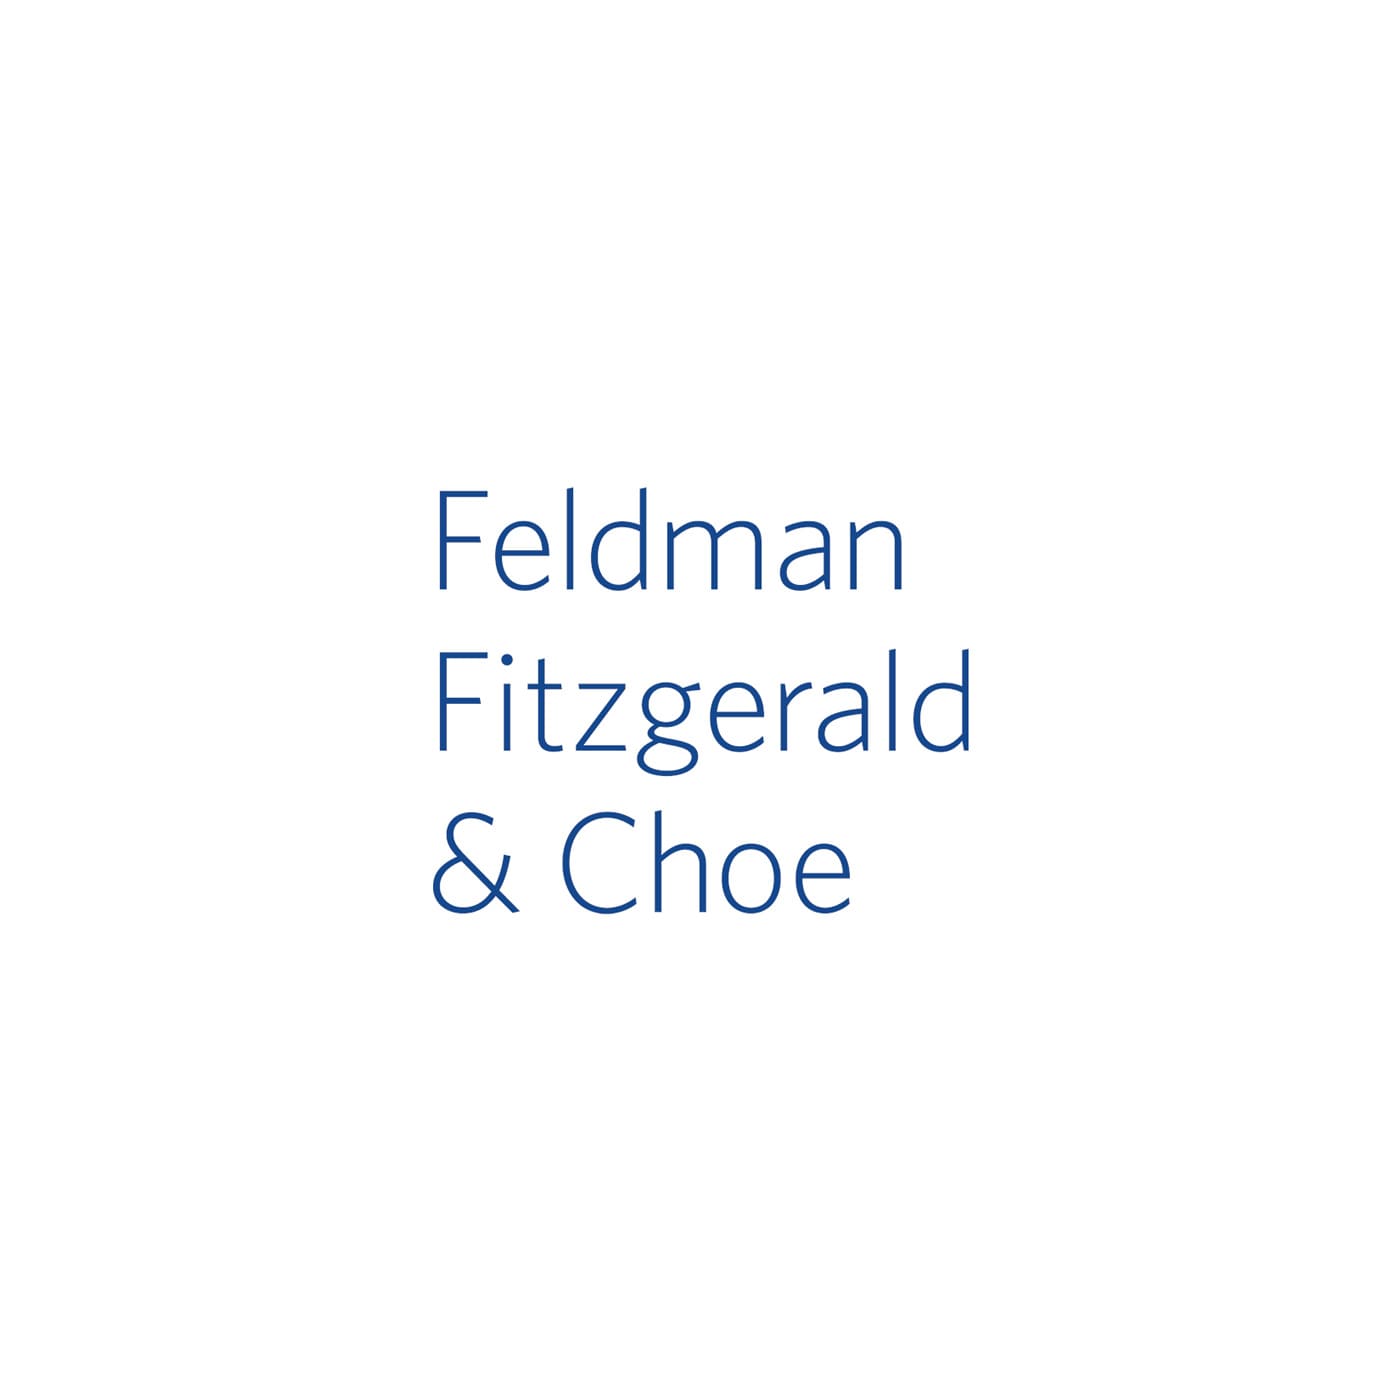 Feldman, Fitzgerald & Choe | Vitamin